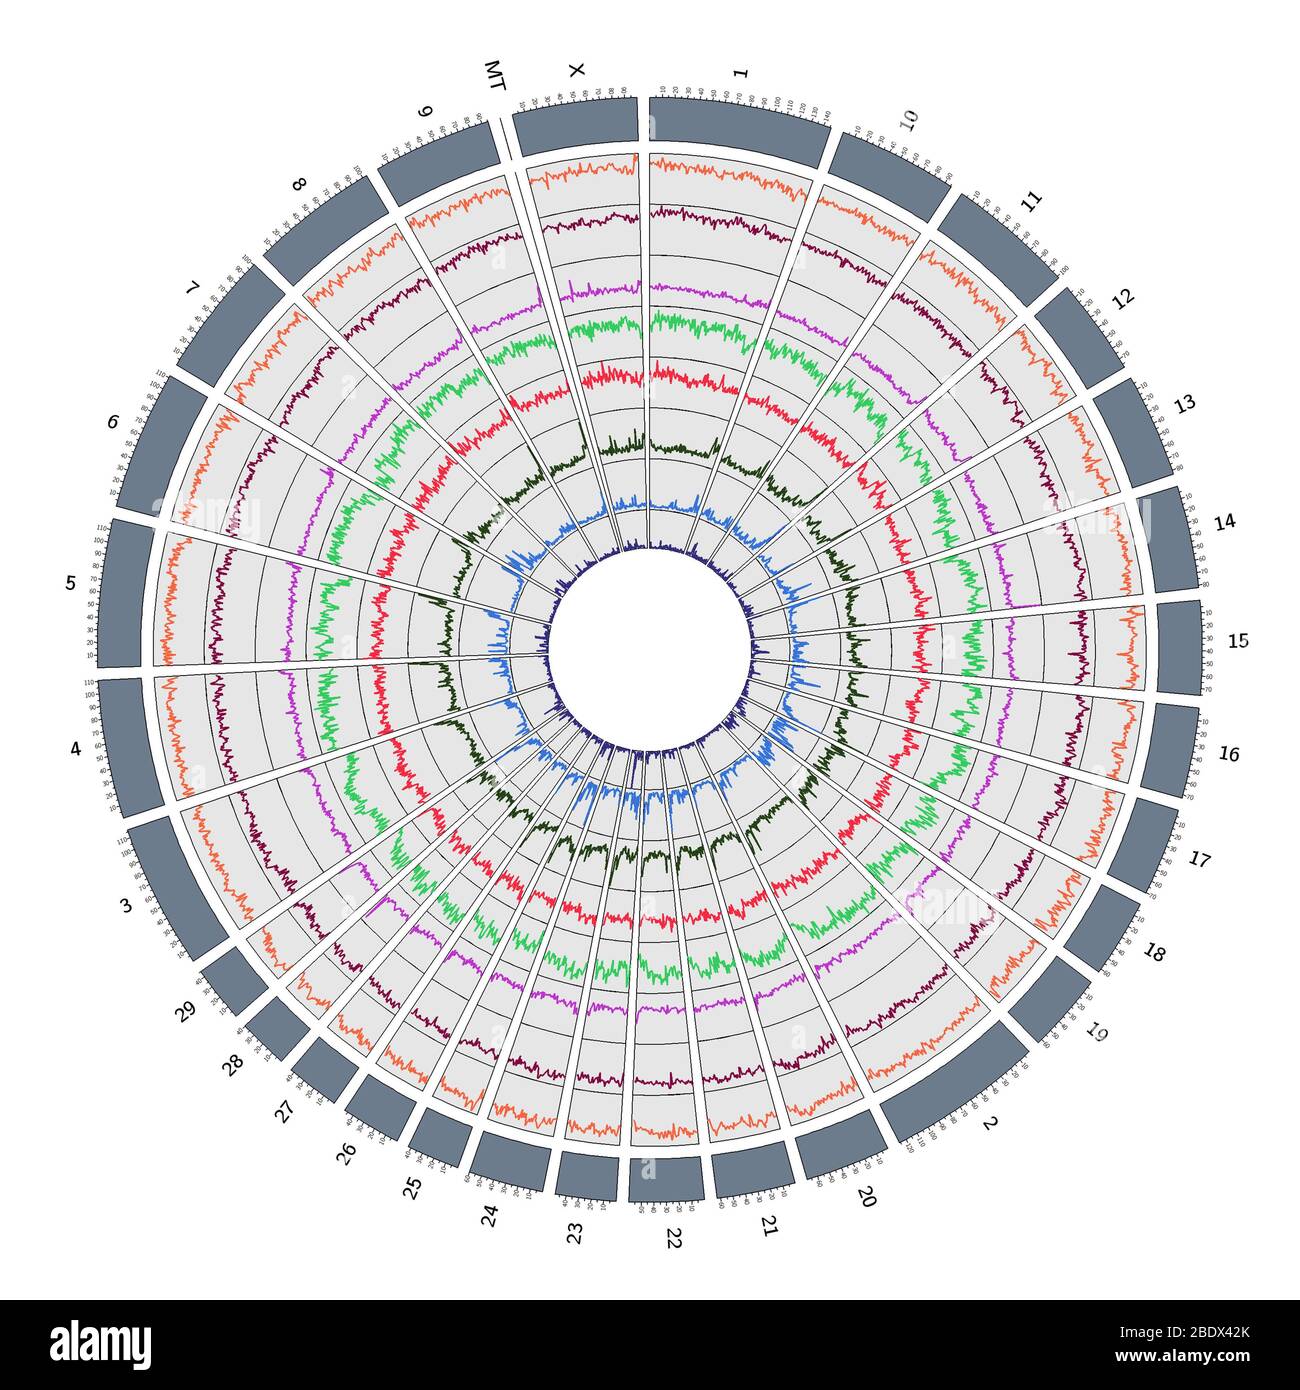 Circos, Circular Genome Map, Cow Stock Photo